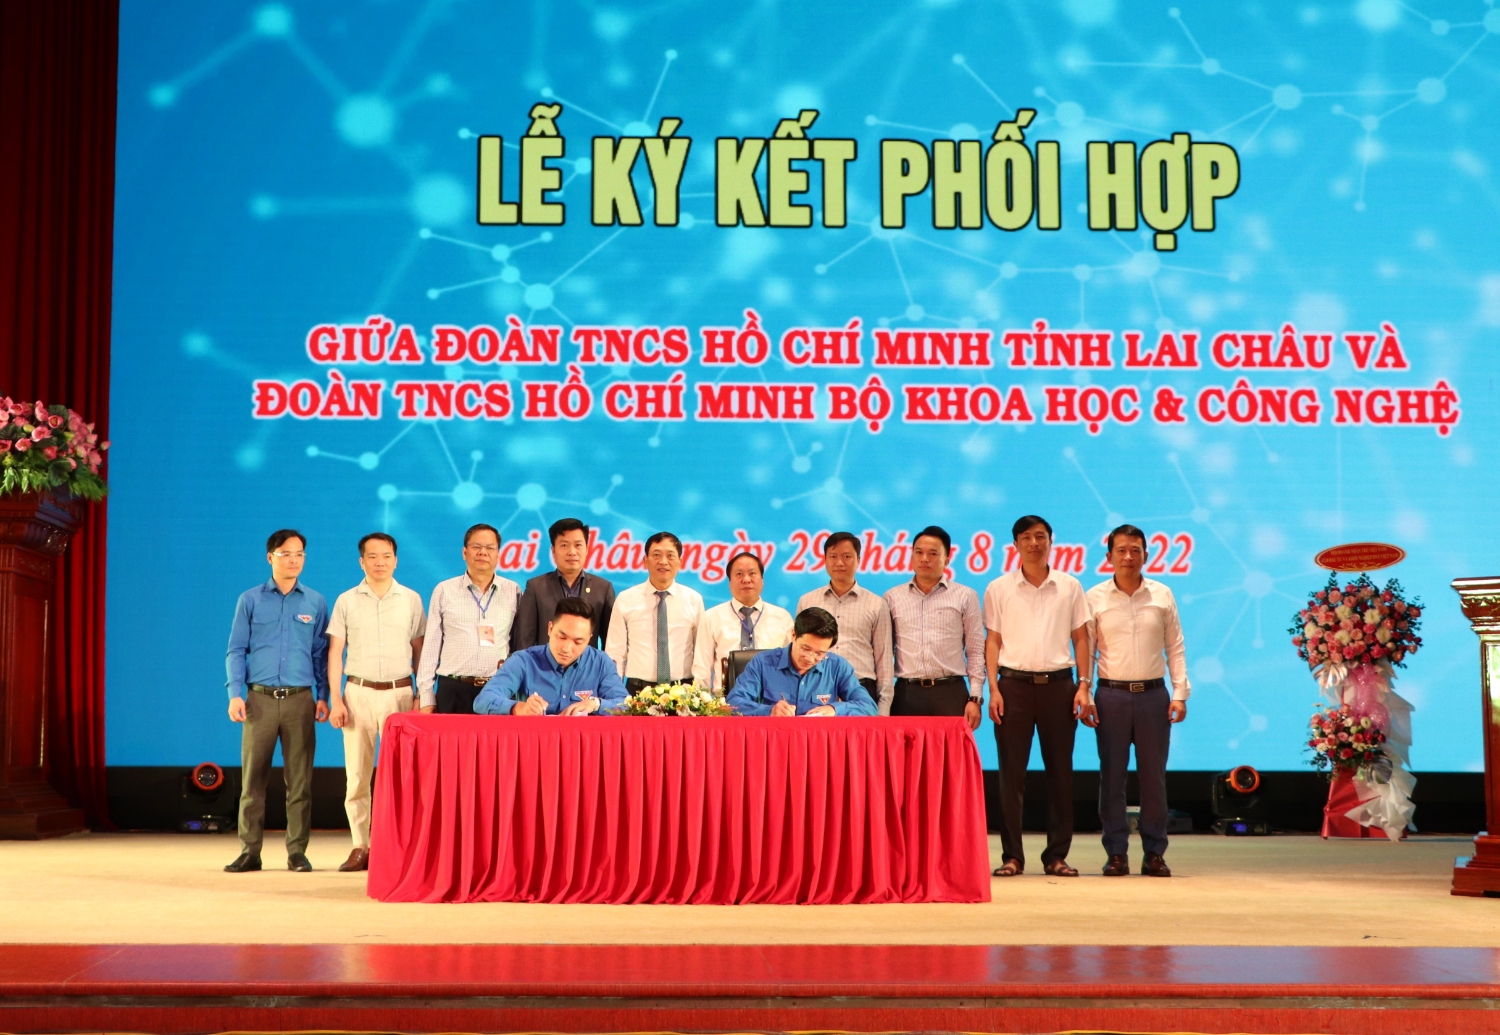 Lãnh đạo Đoàn TNCS Hồ Chí Minh tỉnh Lai Châu và lãnh đạo Đoàn TNCS Hồ Chí Minh Bộ Khoa học và Công nghệ ký kết Chương trình phối hợp giữa hai đơn vị